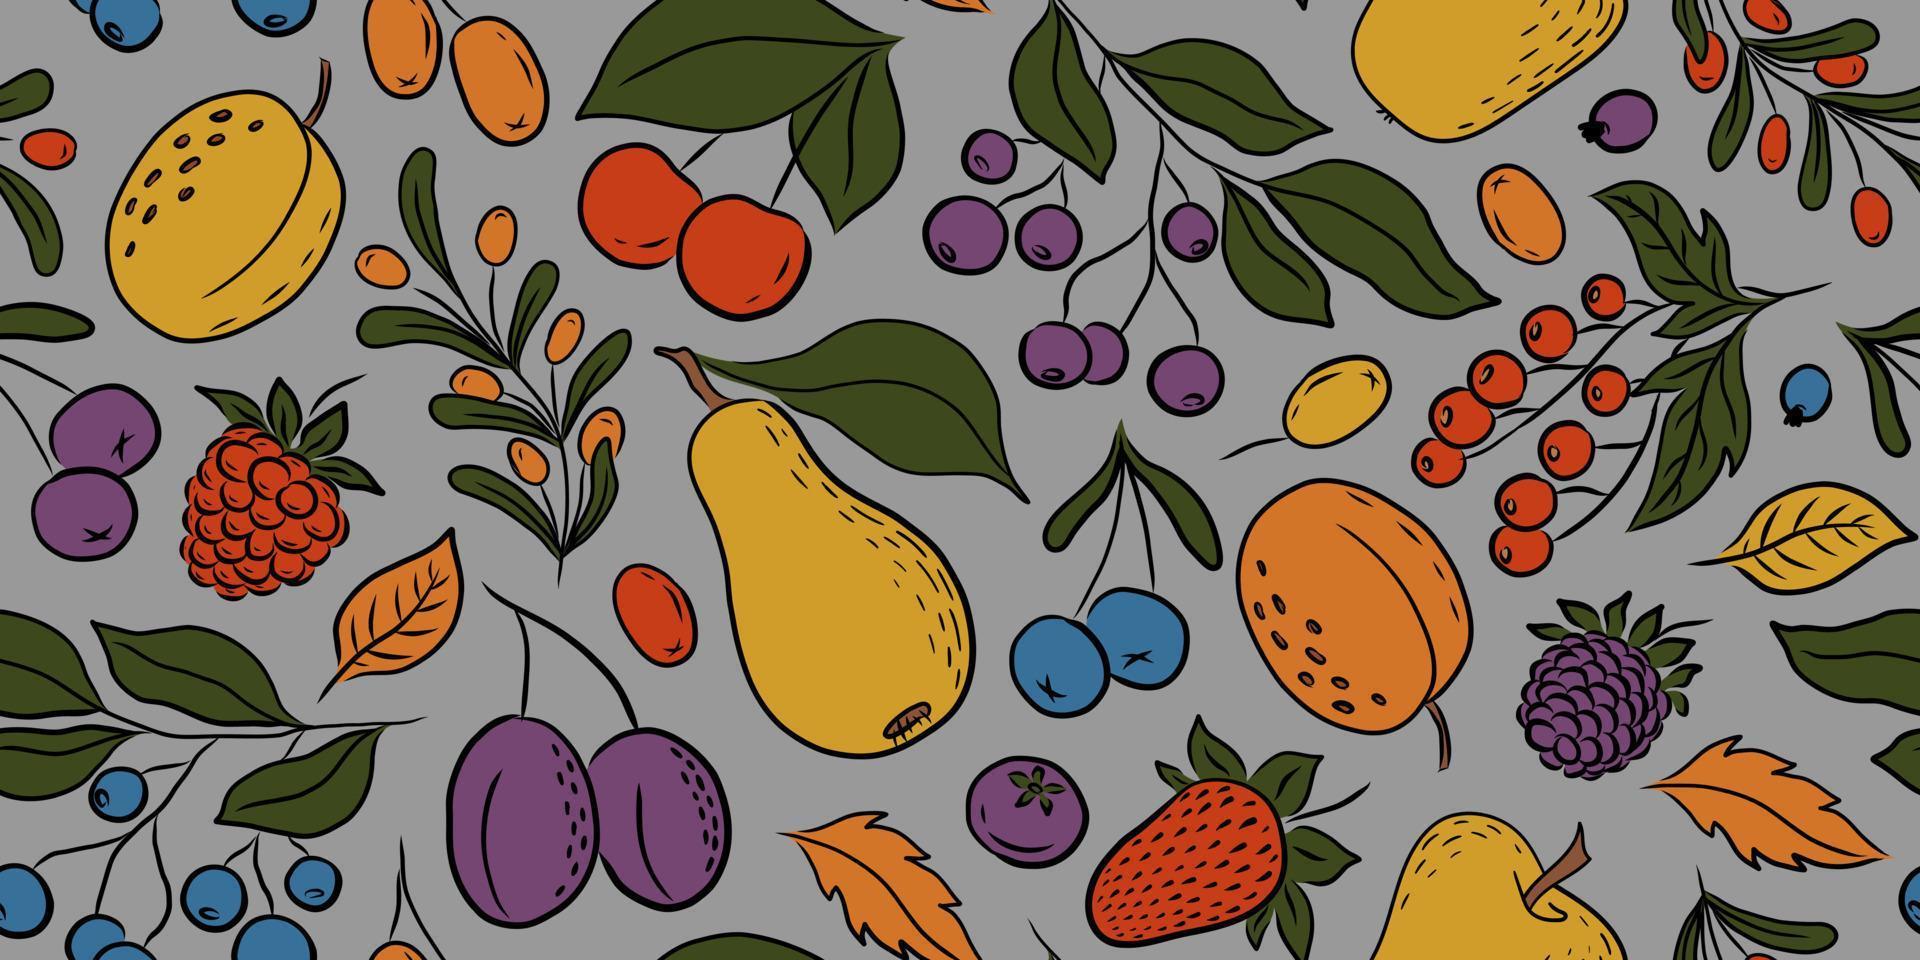 patrón transparente de vector gris con coloridas frutas y bayas